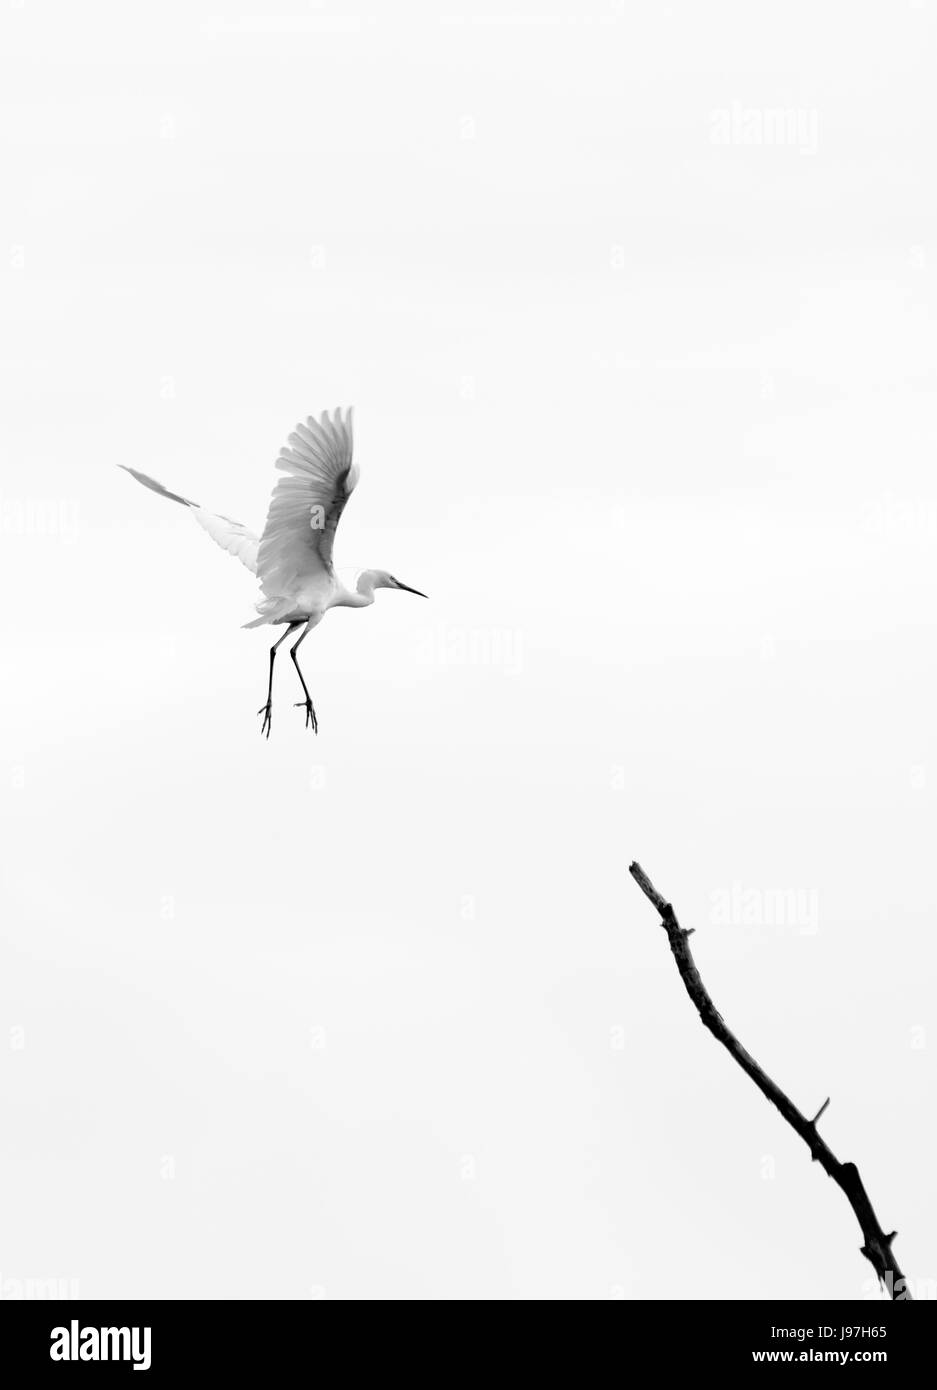 El pájaro Heron aterrizando en una rama Foto de stock